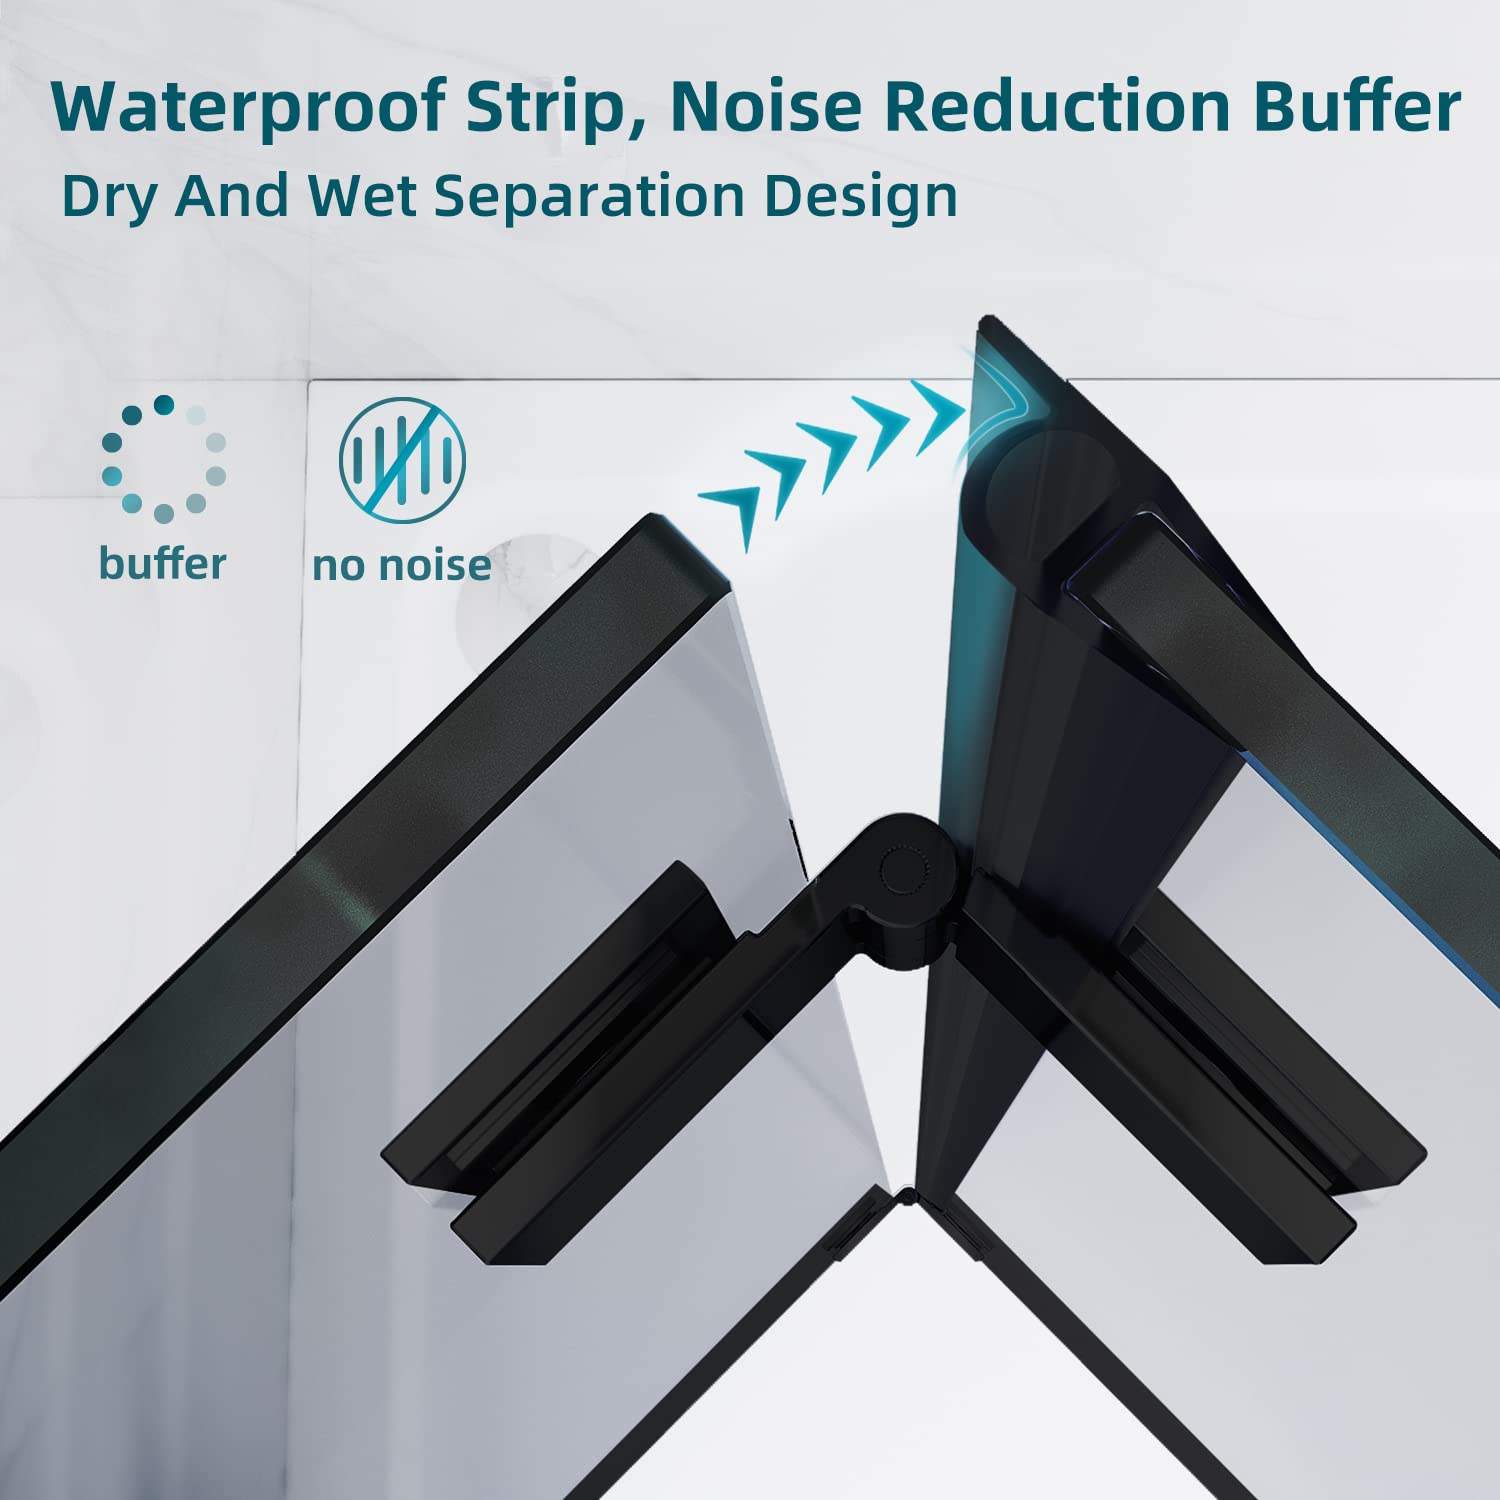 waterproof strip, noise reduction buffer